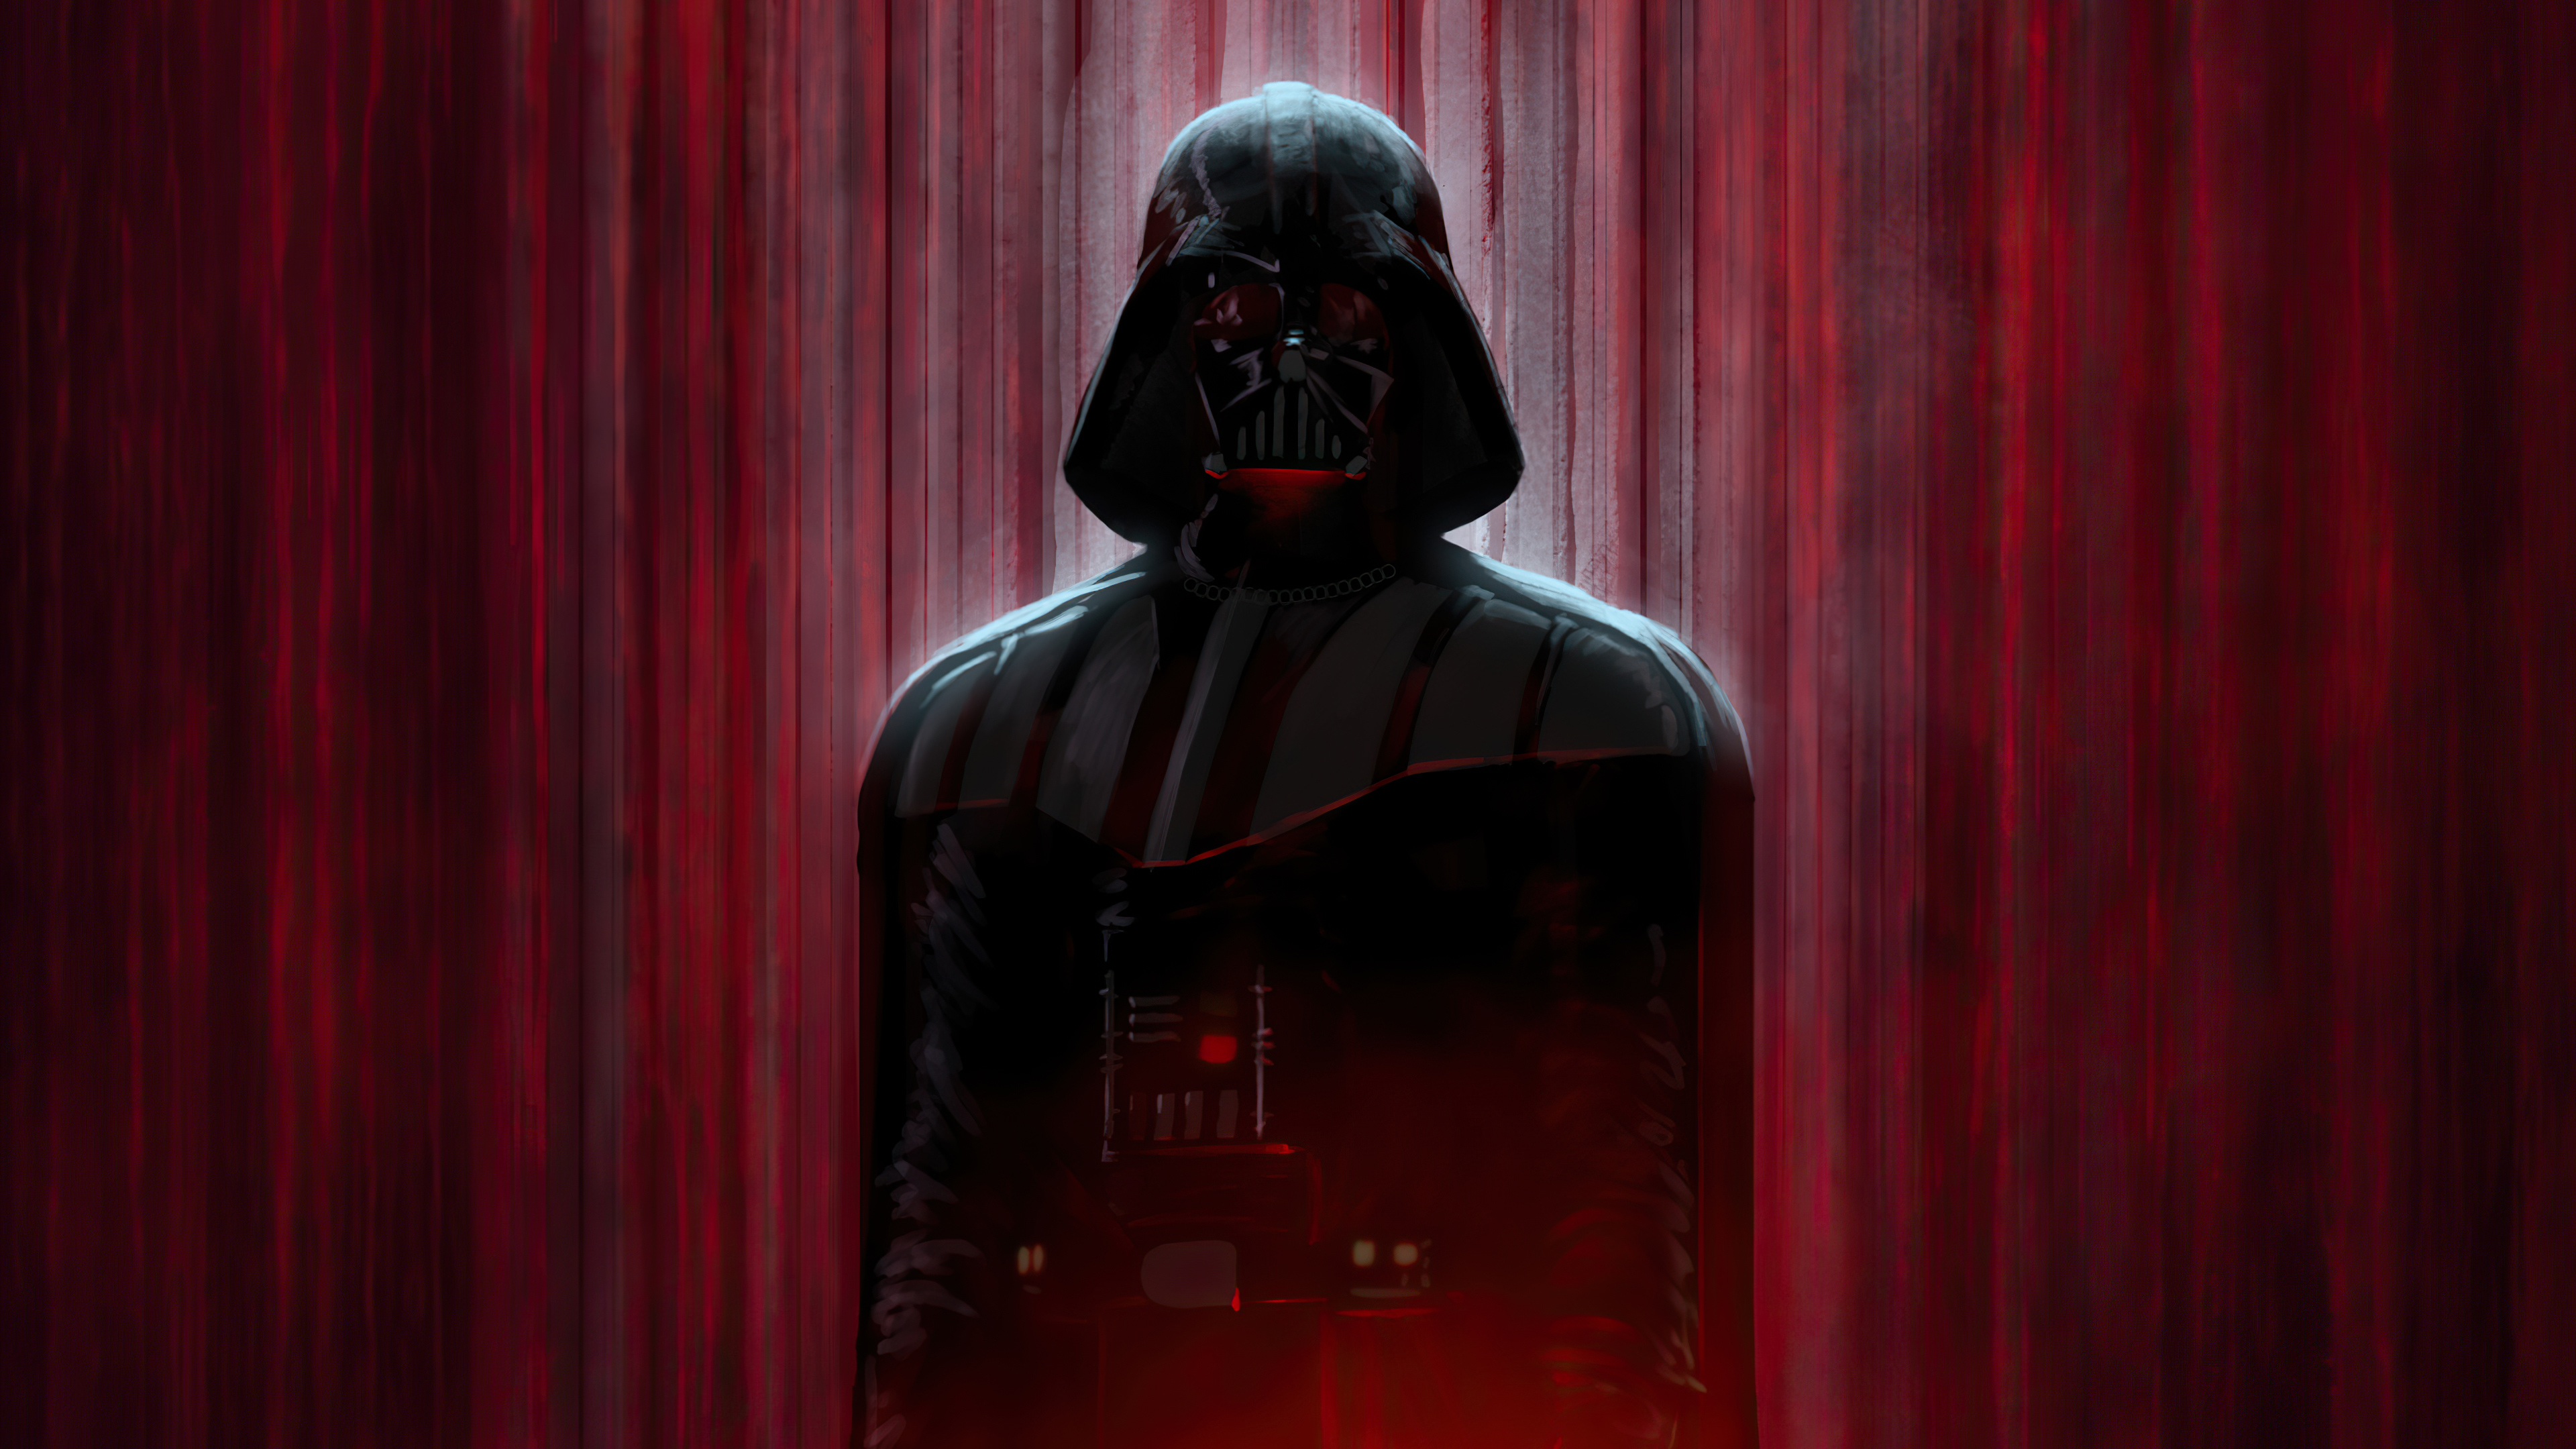 Sith Darth Vader Star Wars Wallpaper, HD Movies 4K Wallpapers, Images